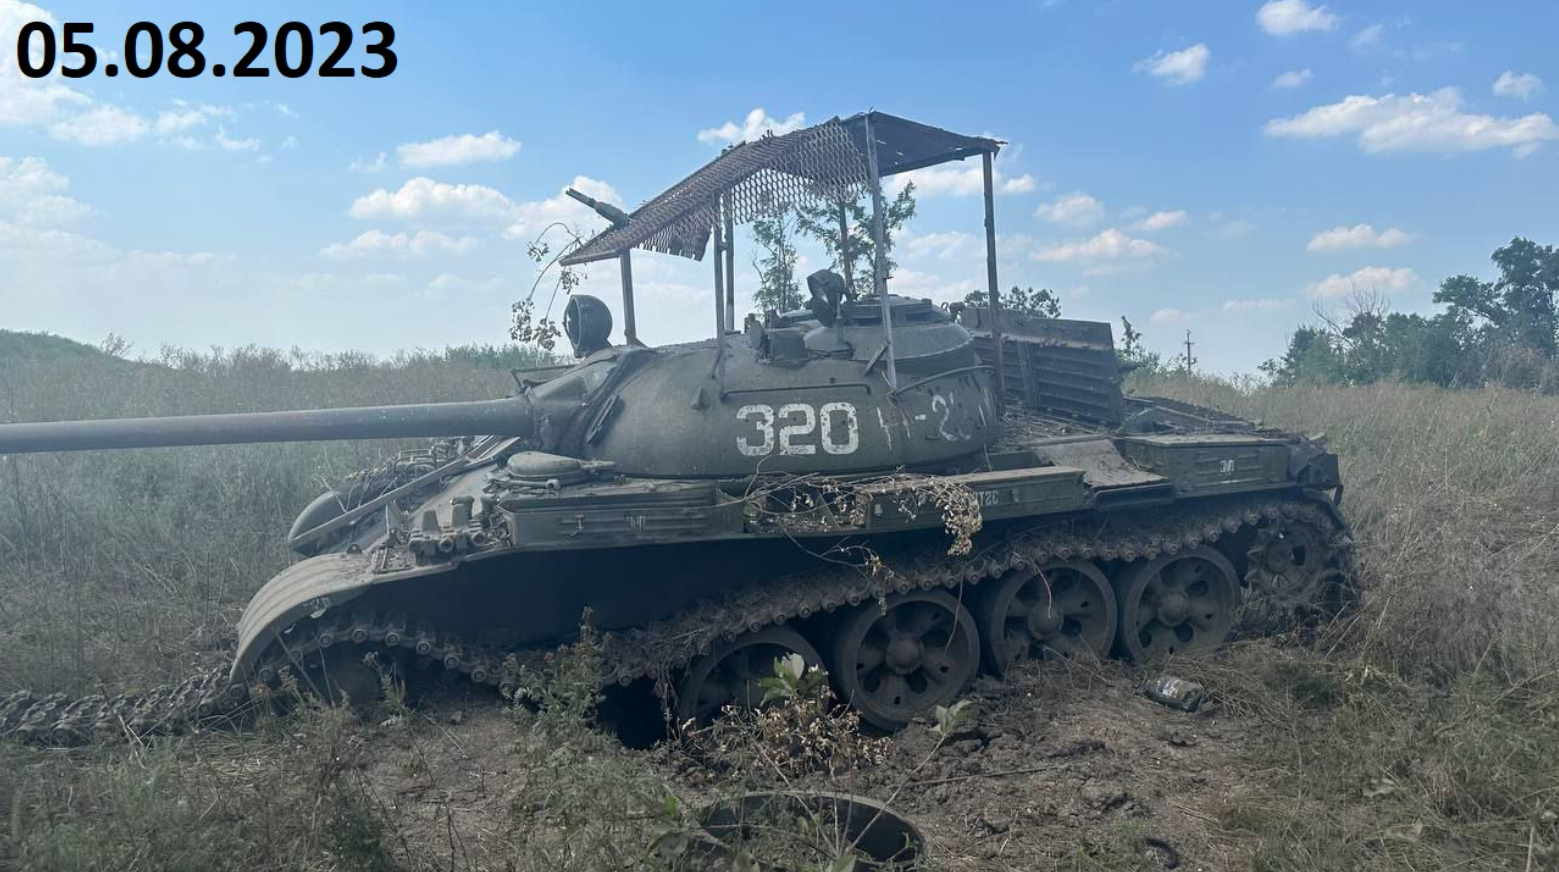 Létezik, hogy az 56-os forradalmat megjárt orosz tankot lőttek ki az ukránok?